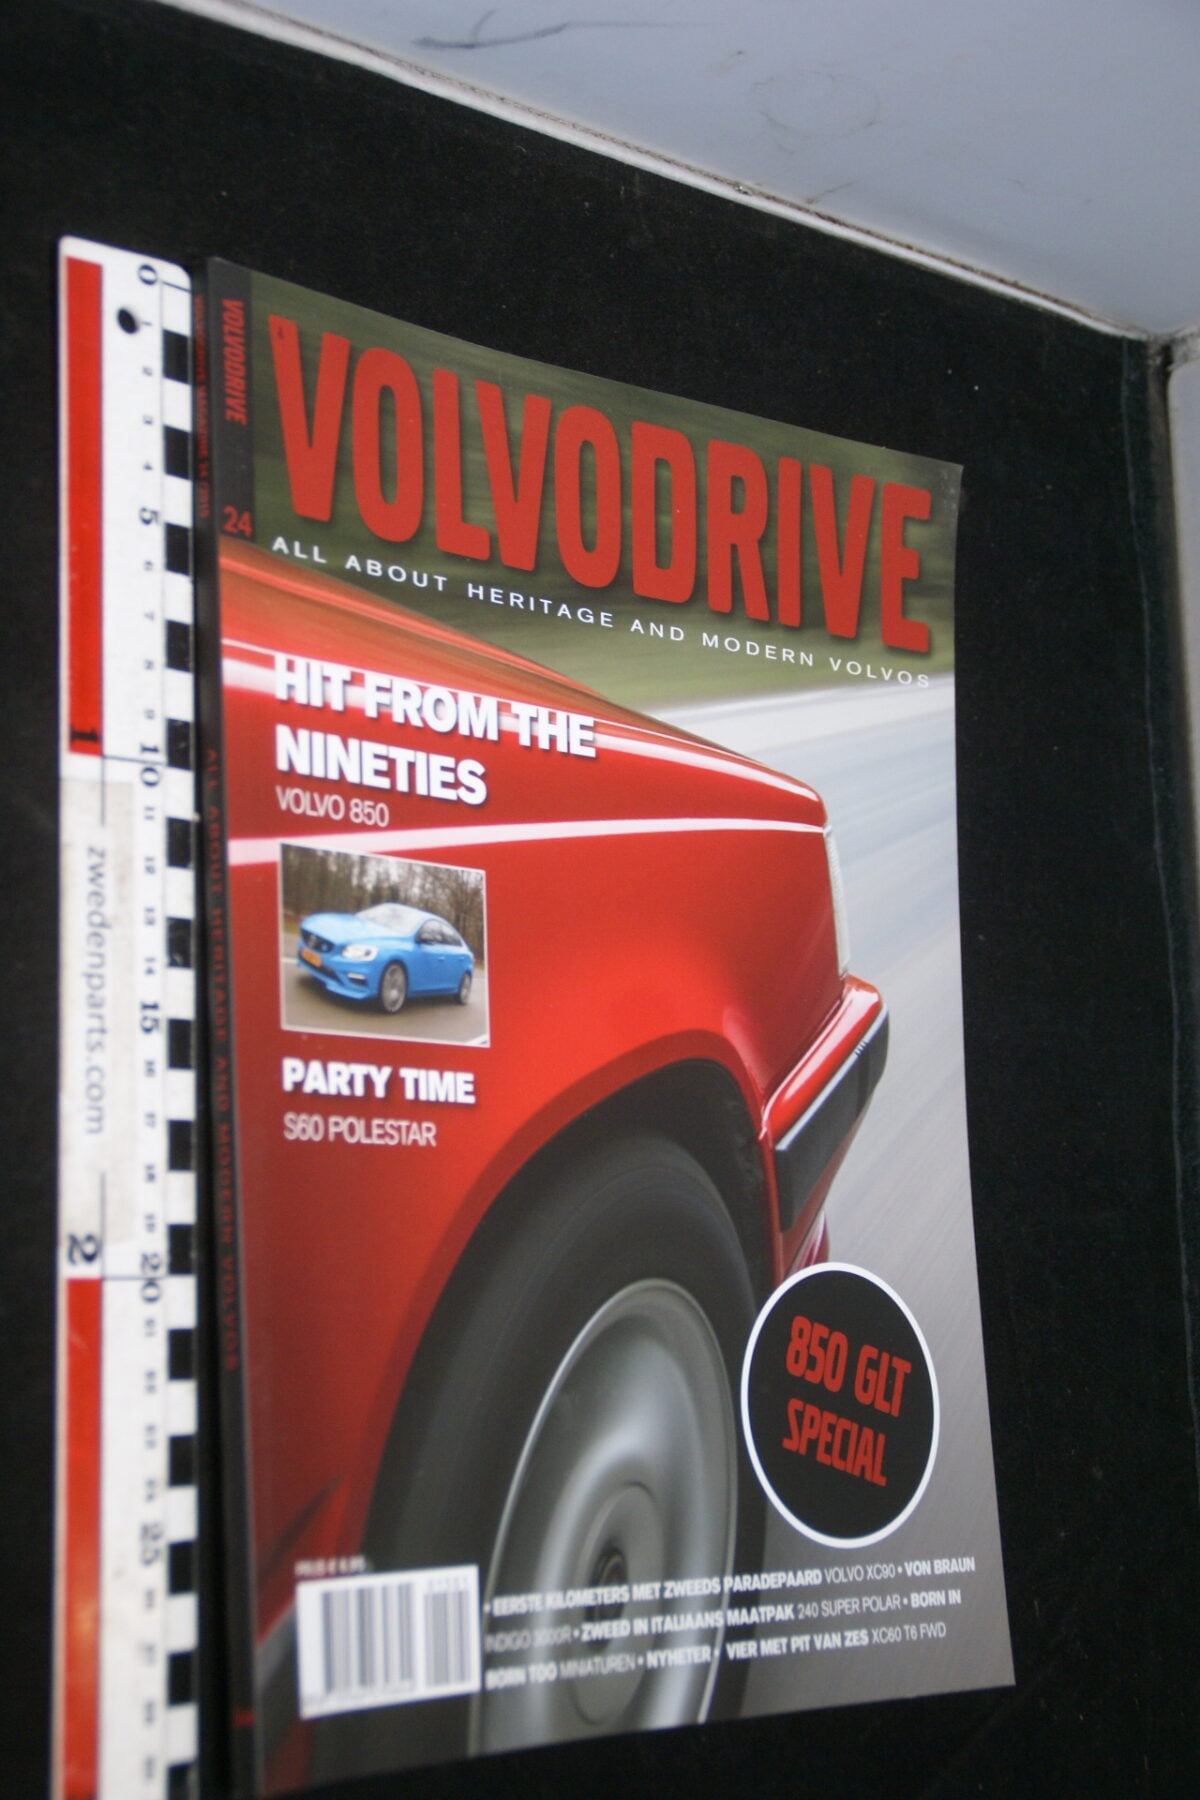 DSC09607 2015 februairi tijdschrift Volvodrive  nr 24 Volvo 850GLT special, miniaturen-7923add0